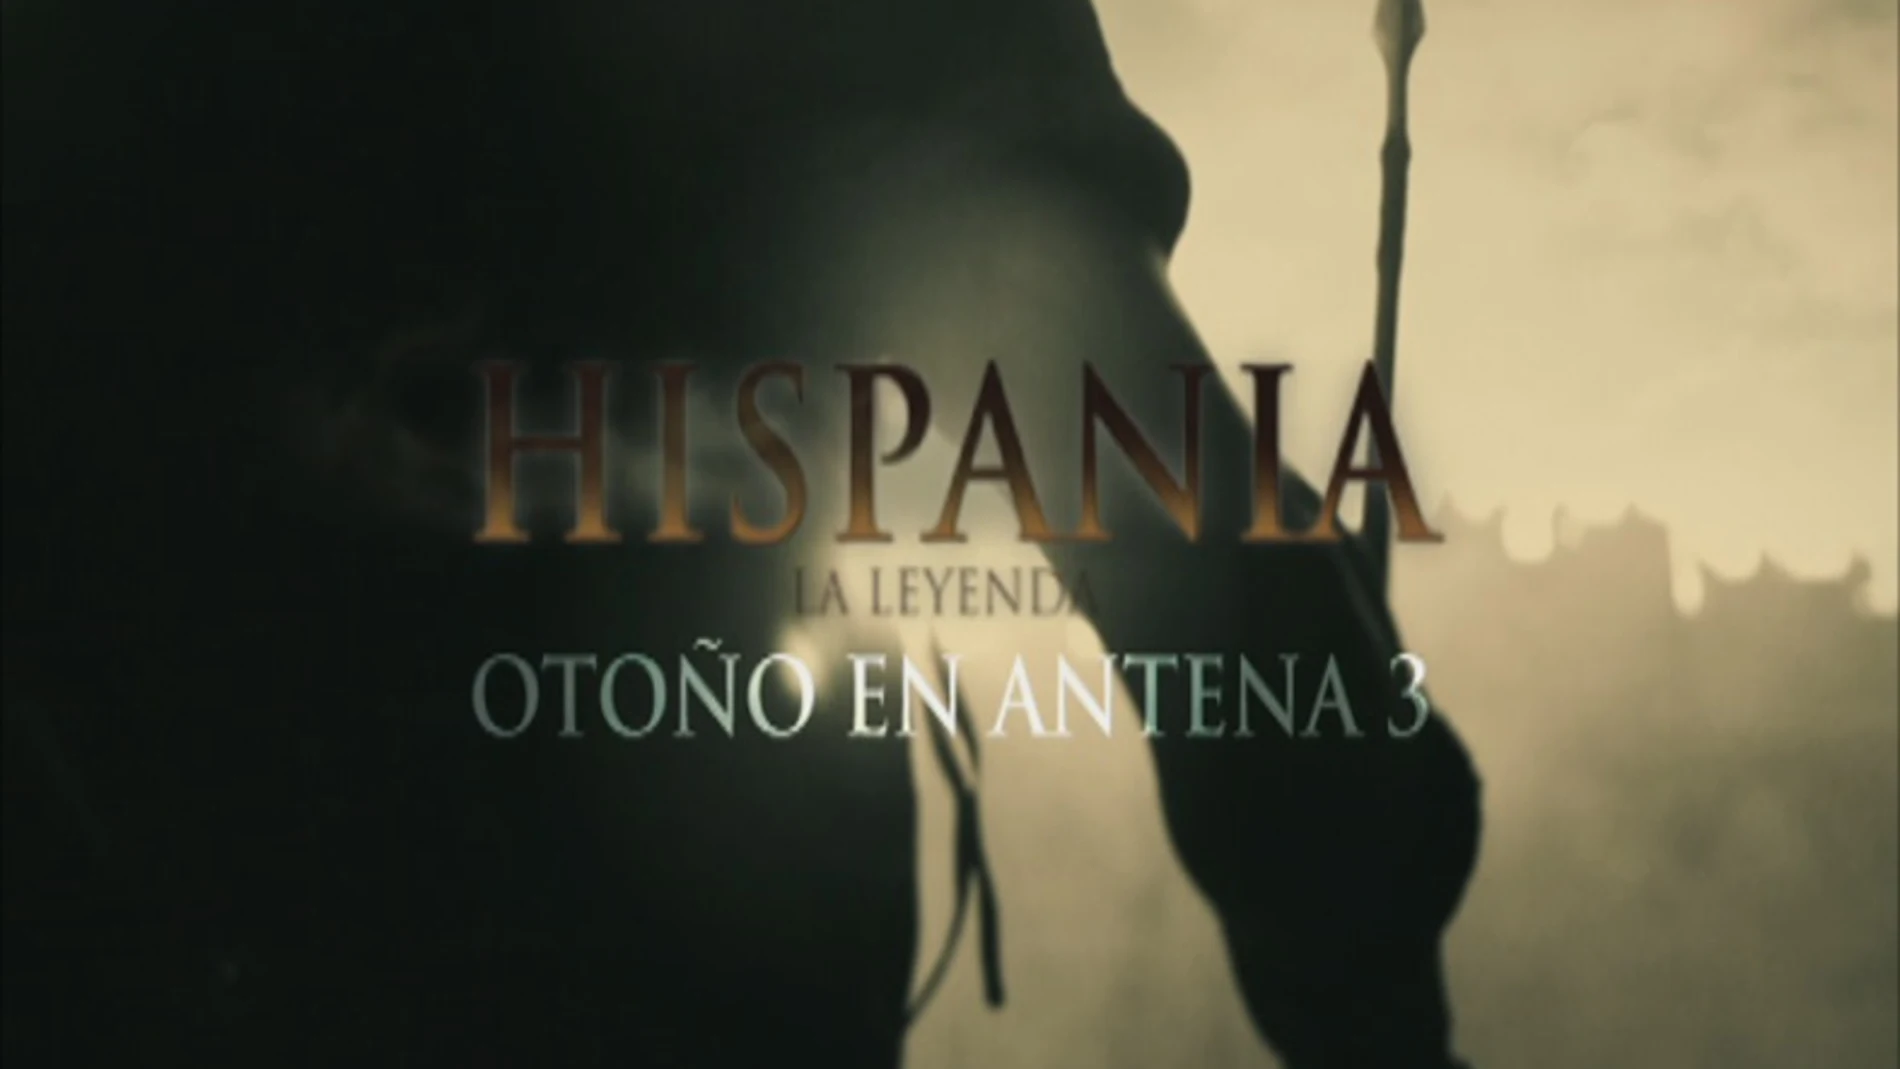 Hispania, la Leyenda Otoño en Antena 3